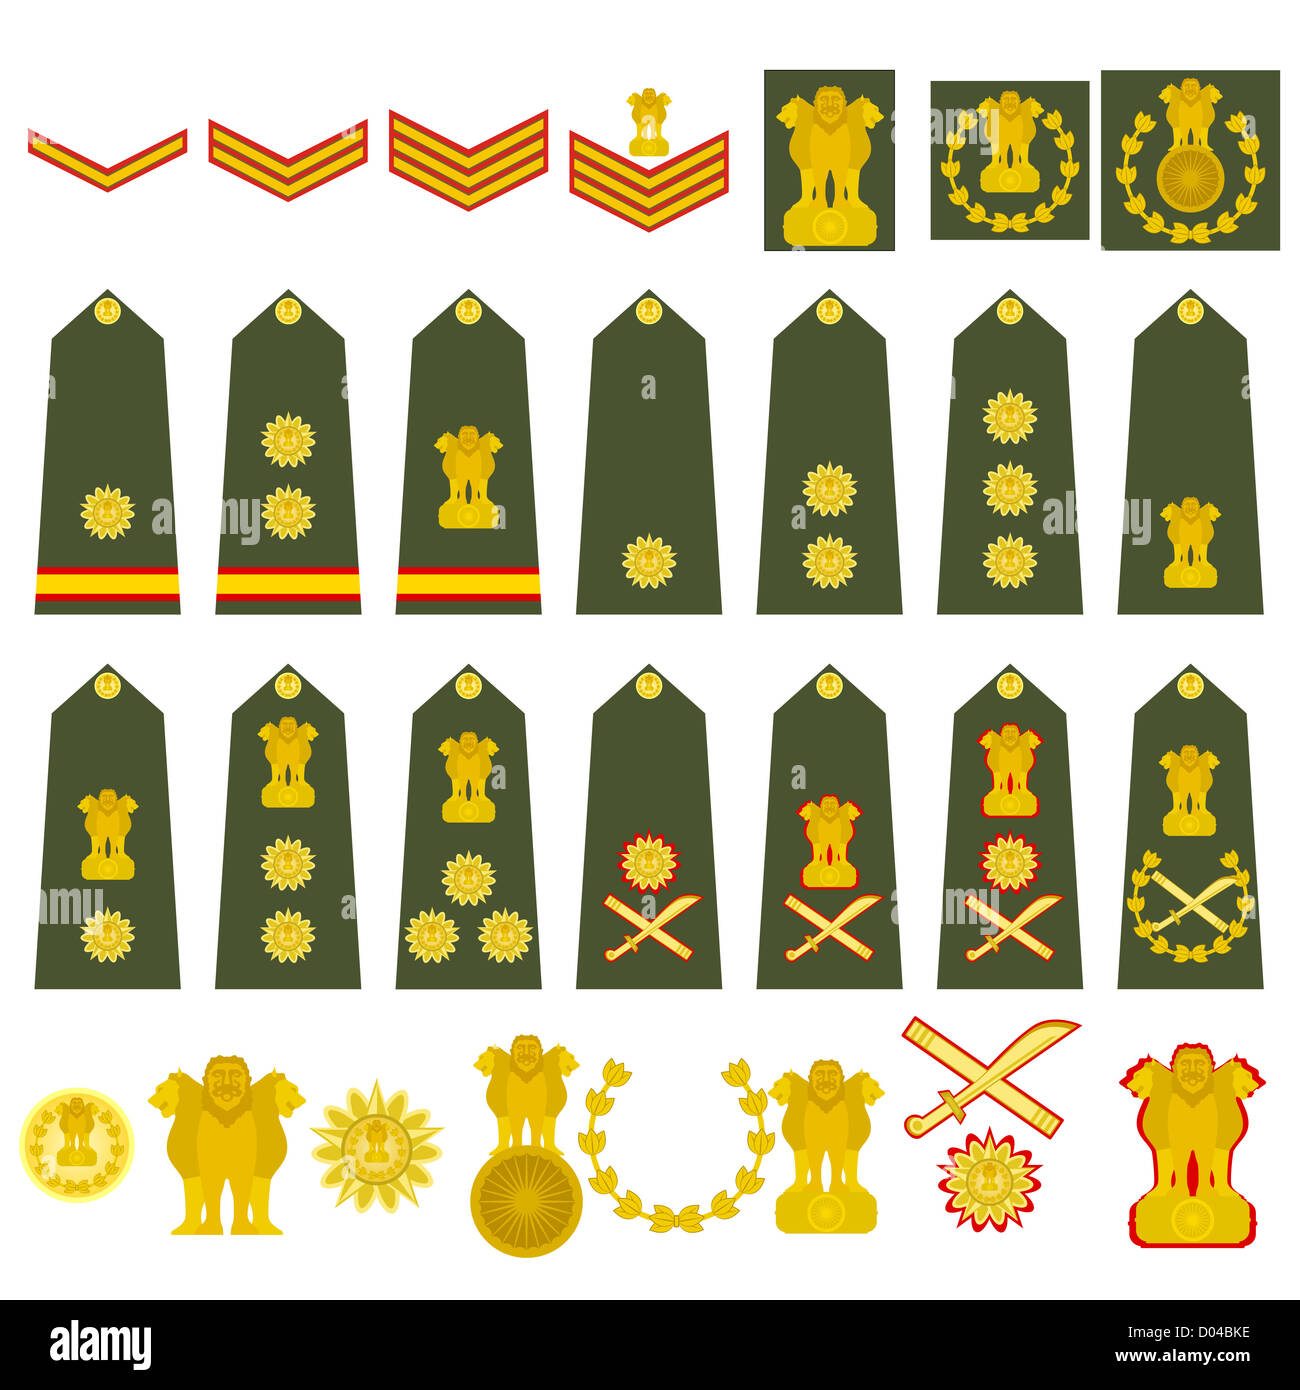 Epauletten, militärische Ränge und Abzeichen. Abbildung auf weißem Hintergrund. Stockfoto